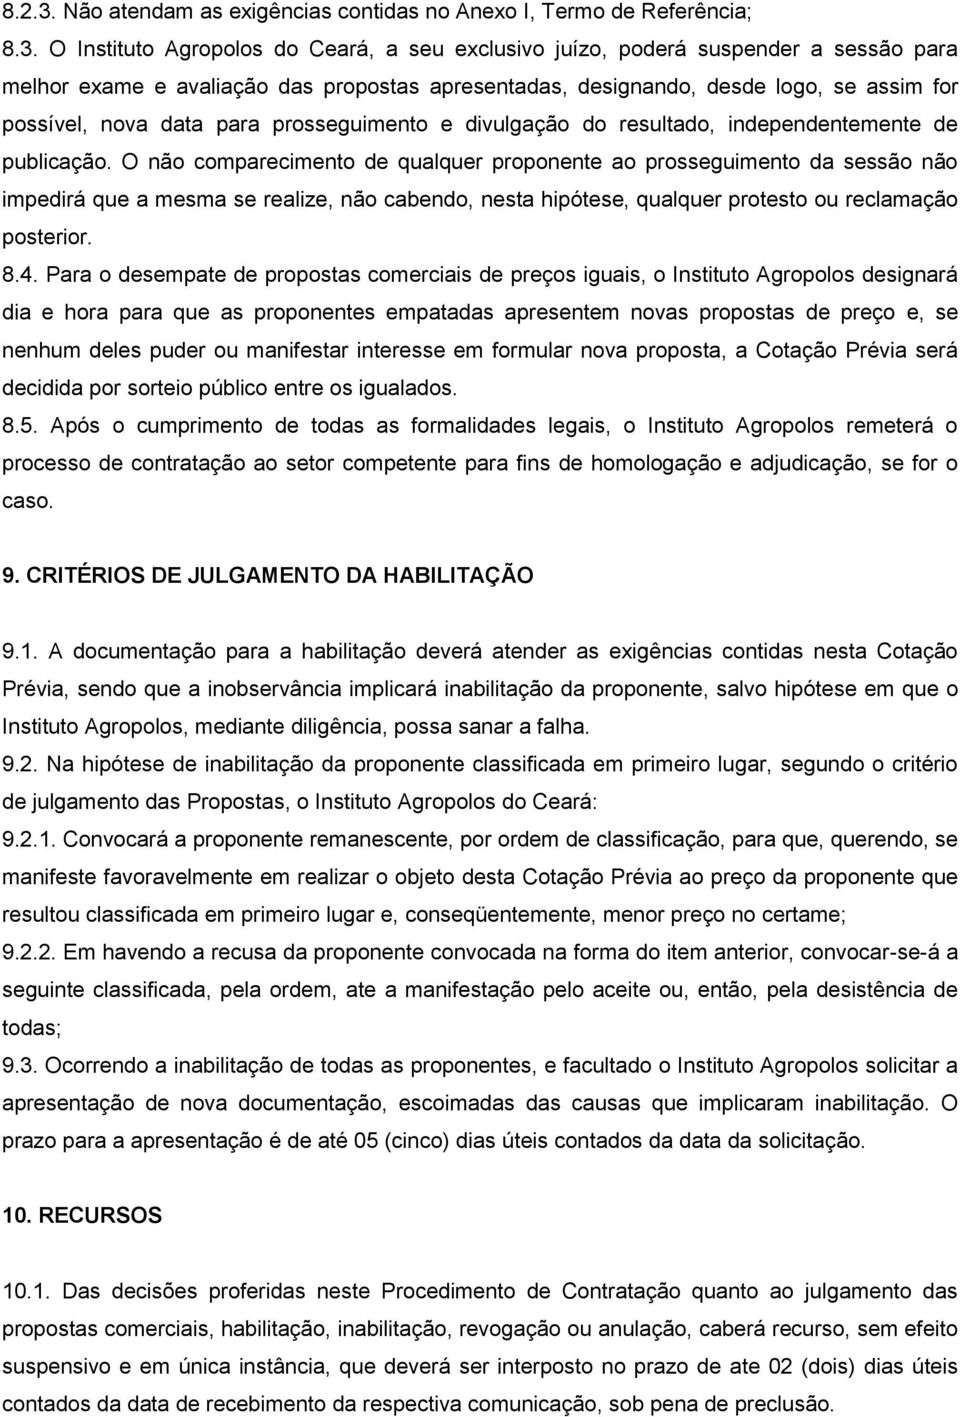 O Instituto Agropolos do Ceará, a seu exclusivo juízo, poderá suspender a sessão para melhor exame e avaliação das propostas apresentadas, designando, desde logo, se assim for possível, nova data